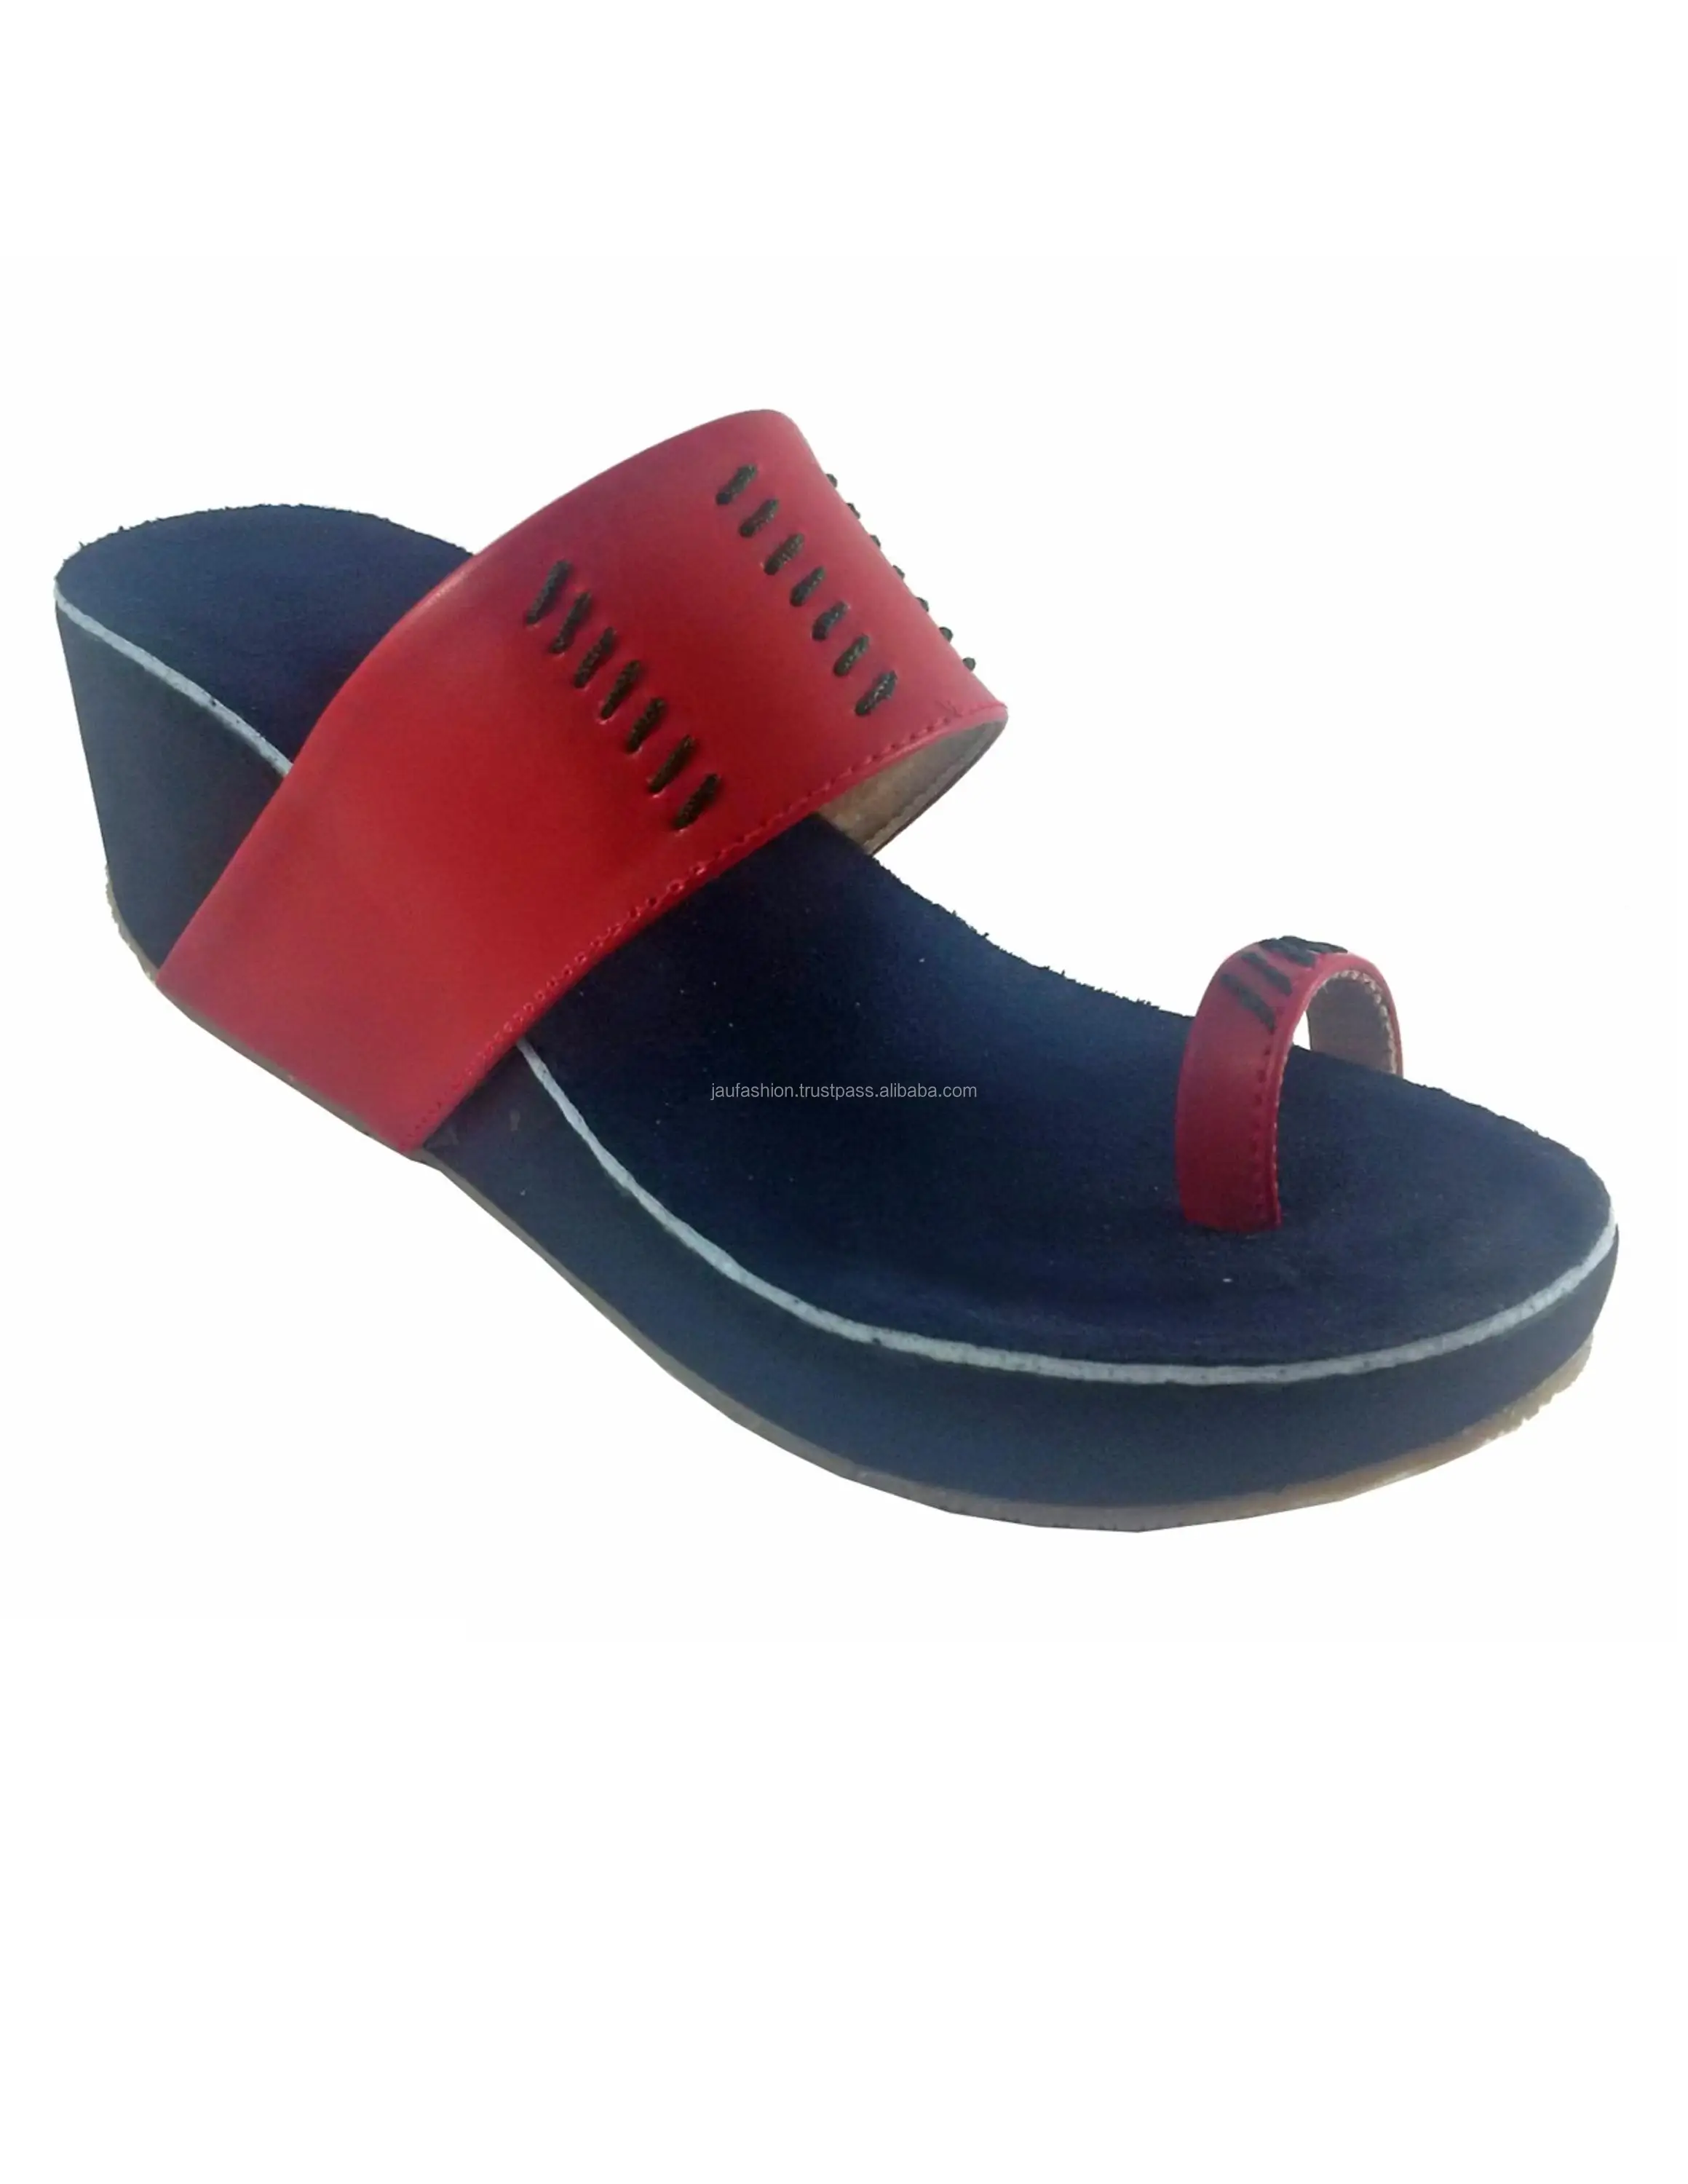 footwear thongs /pvc footwear strap 